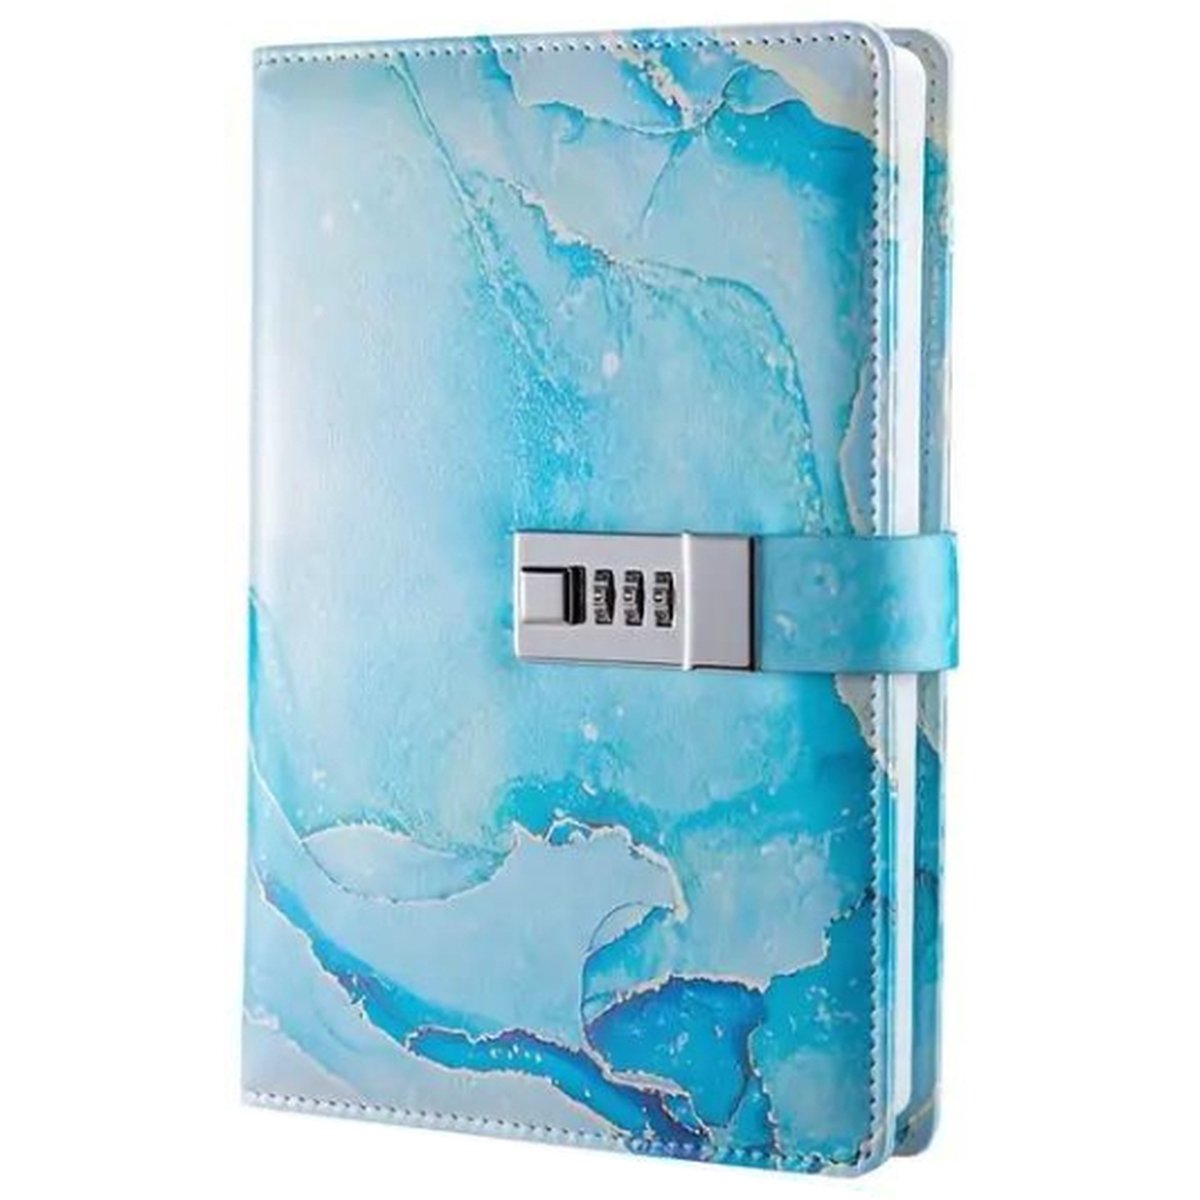 Dagboek A5 met Slot - Marmerlook Blauw / Grijs - Leer - Notitieboek - Notebook - Notitieboek A5